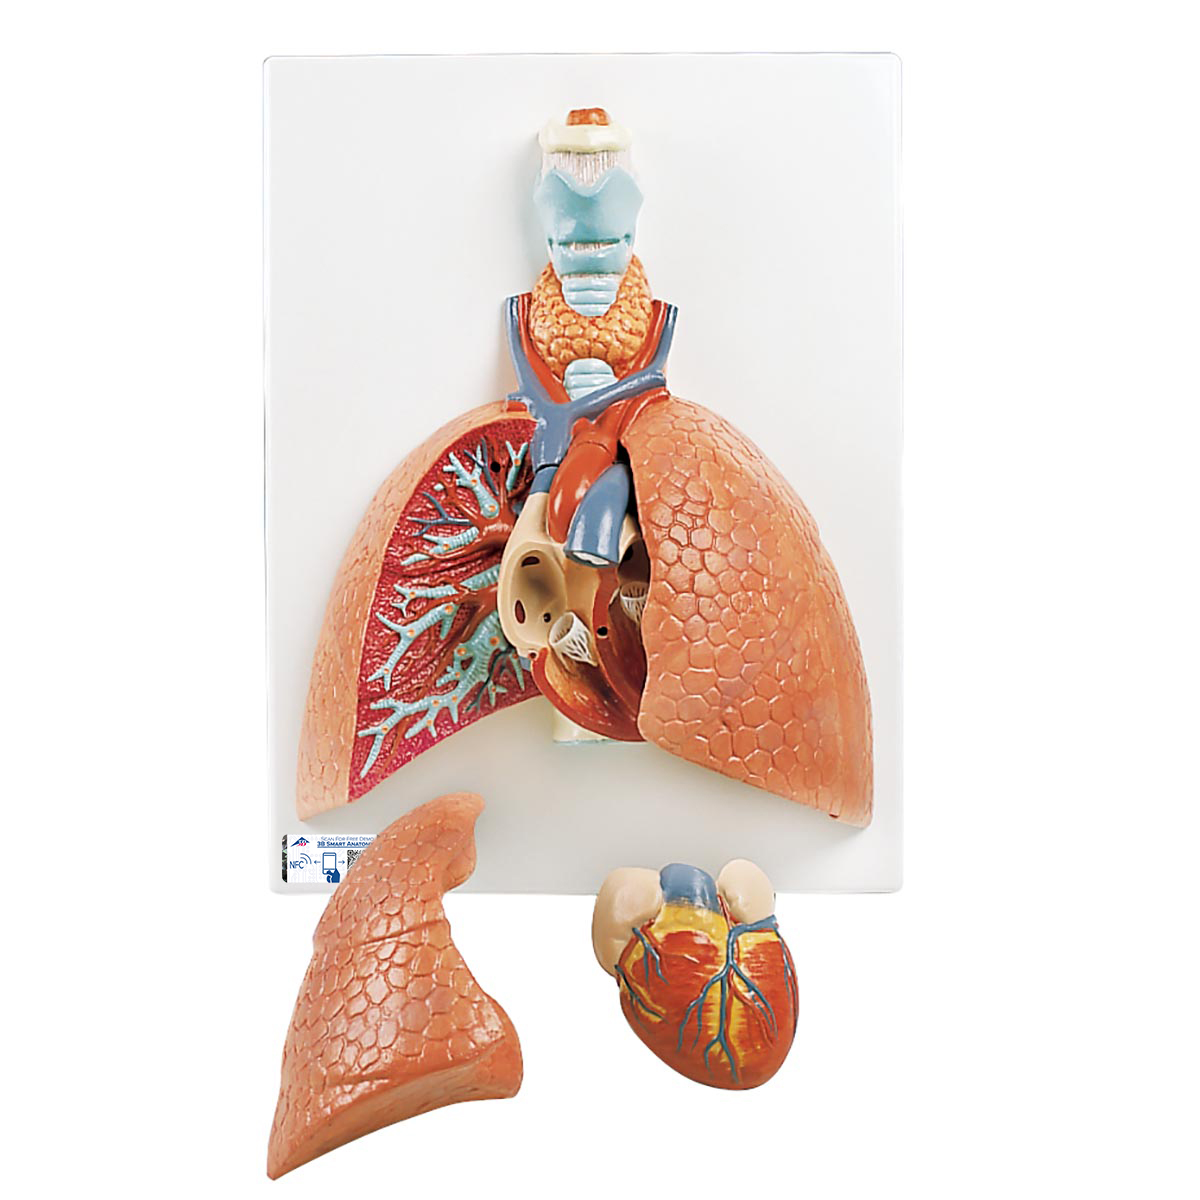 Lungenmodell mit Kehlkopf, 5-teilig - 3B Smart Anatomy, Bestellnummer 1001243, VC243, 3B Scientific